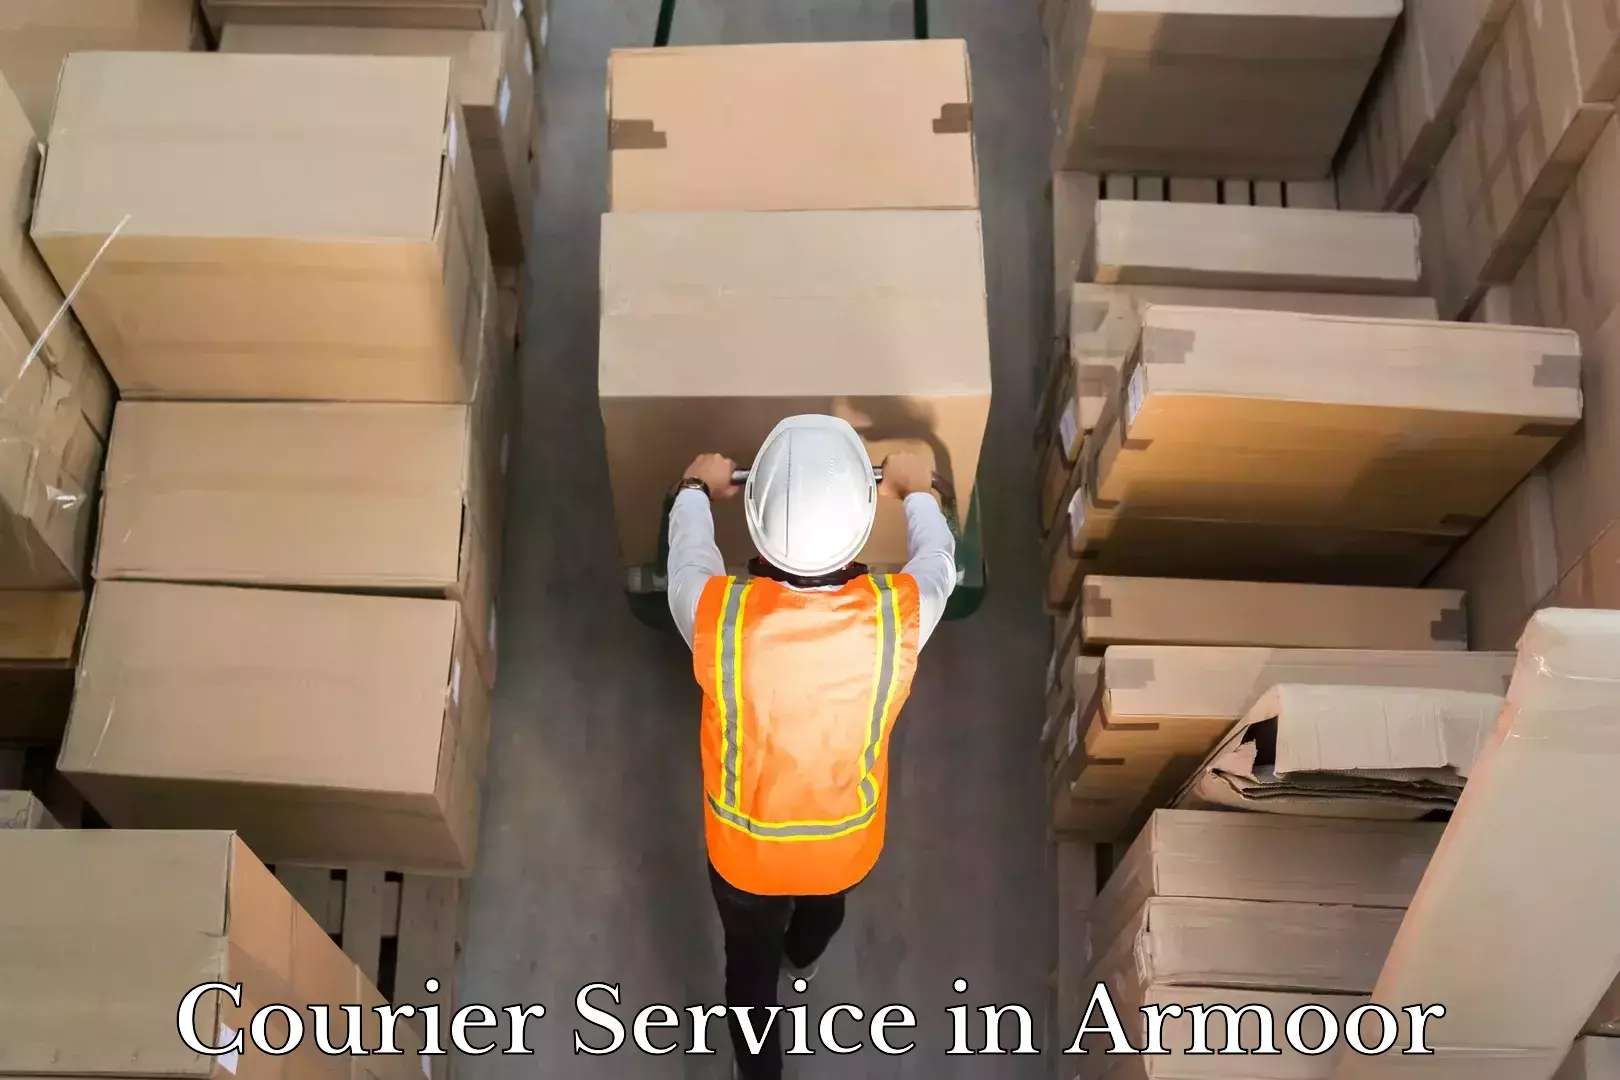 Express package handling in Armoor